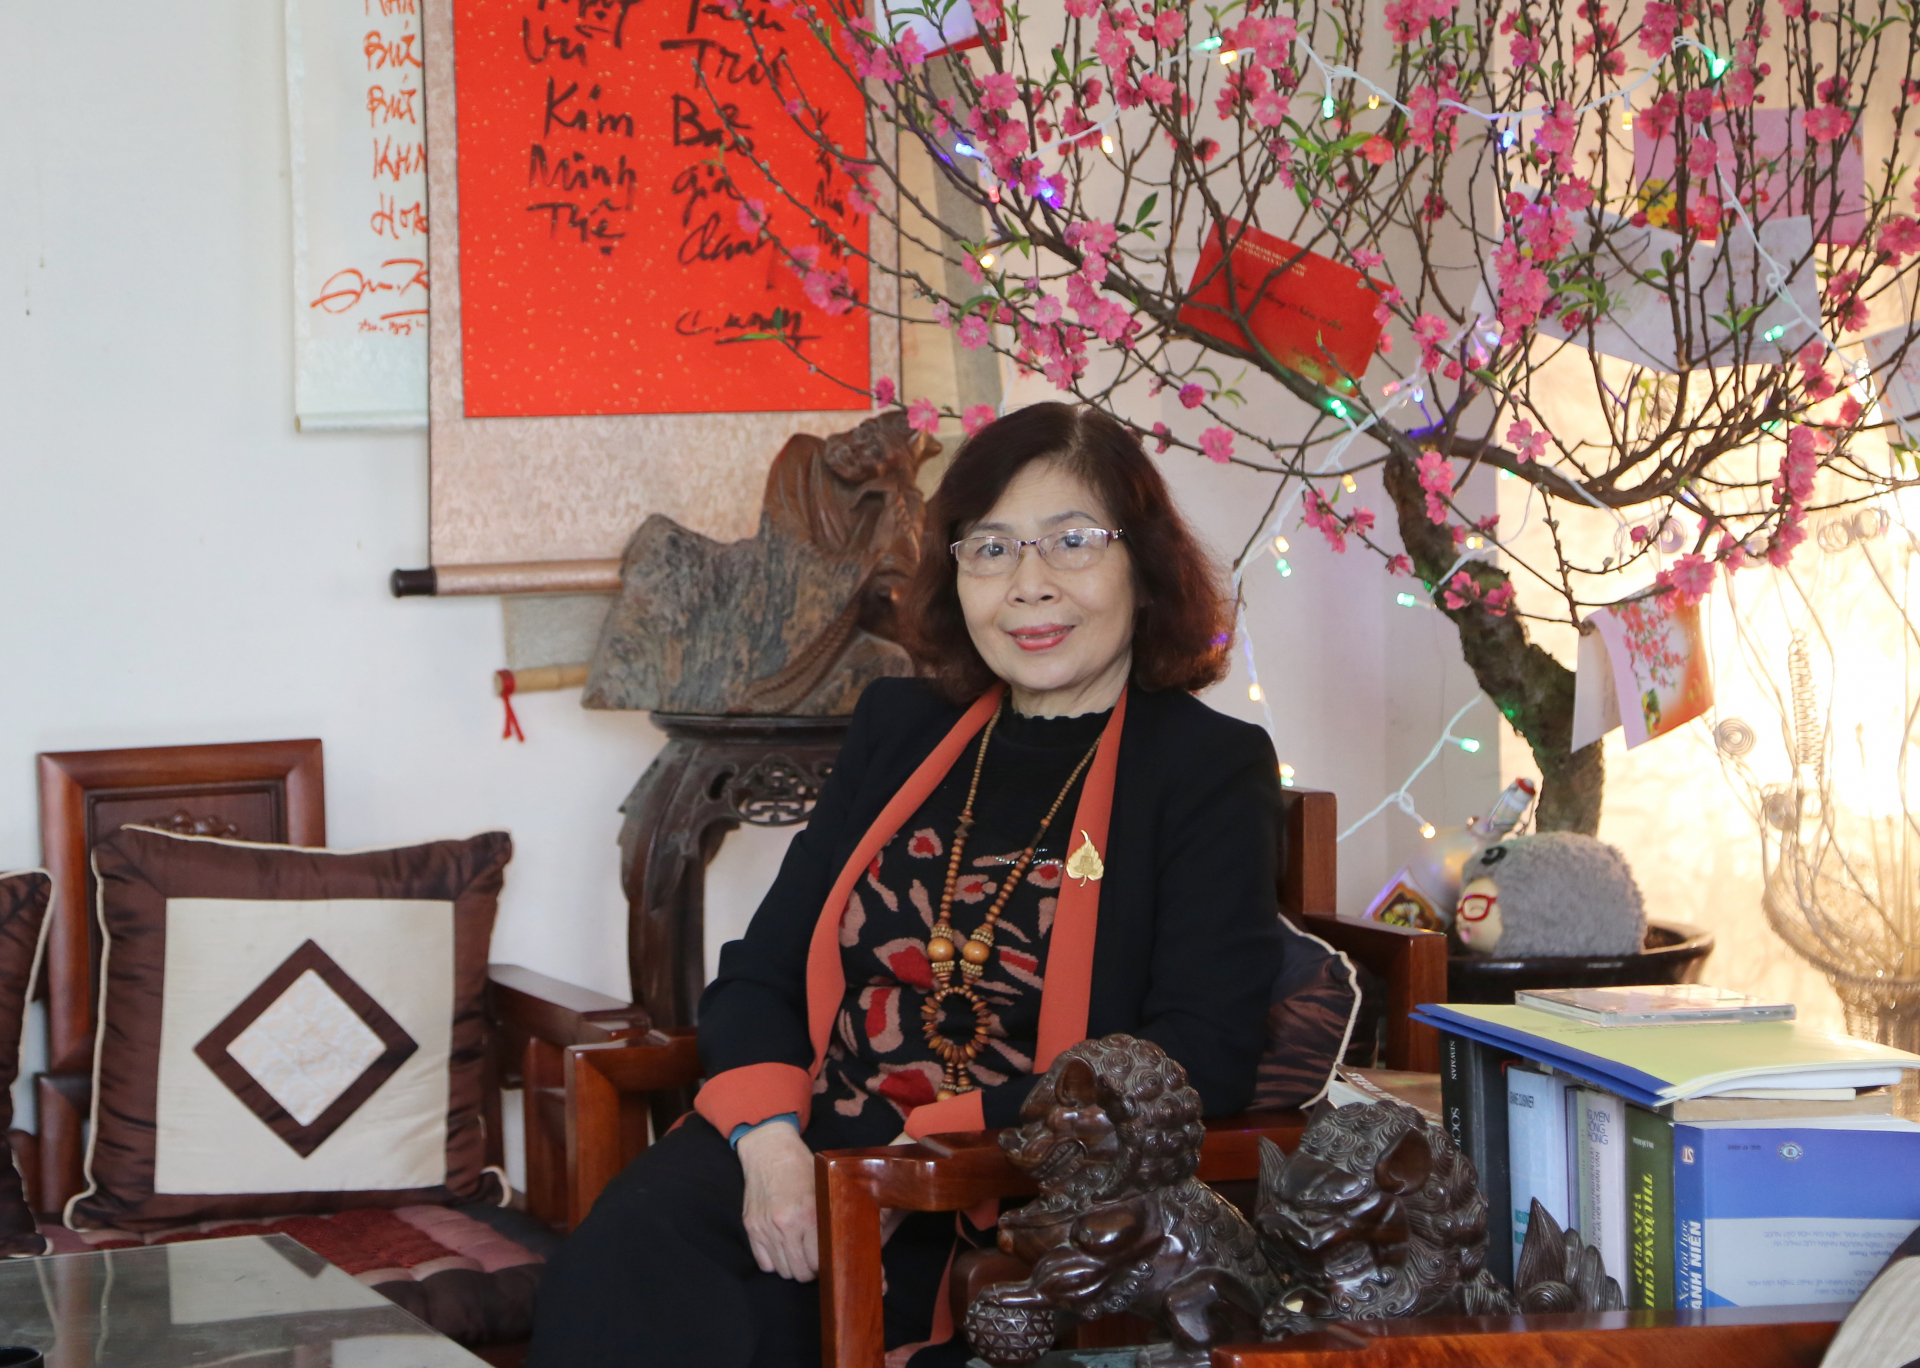 

Giáo sư Lê Thị Quý là nhà hoạt động xã hội sôi nổi và ghi nhiều dấu ấn với những hoạt động đấu tranh vì nữ quyền  